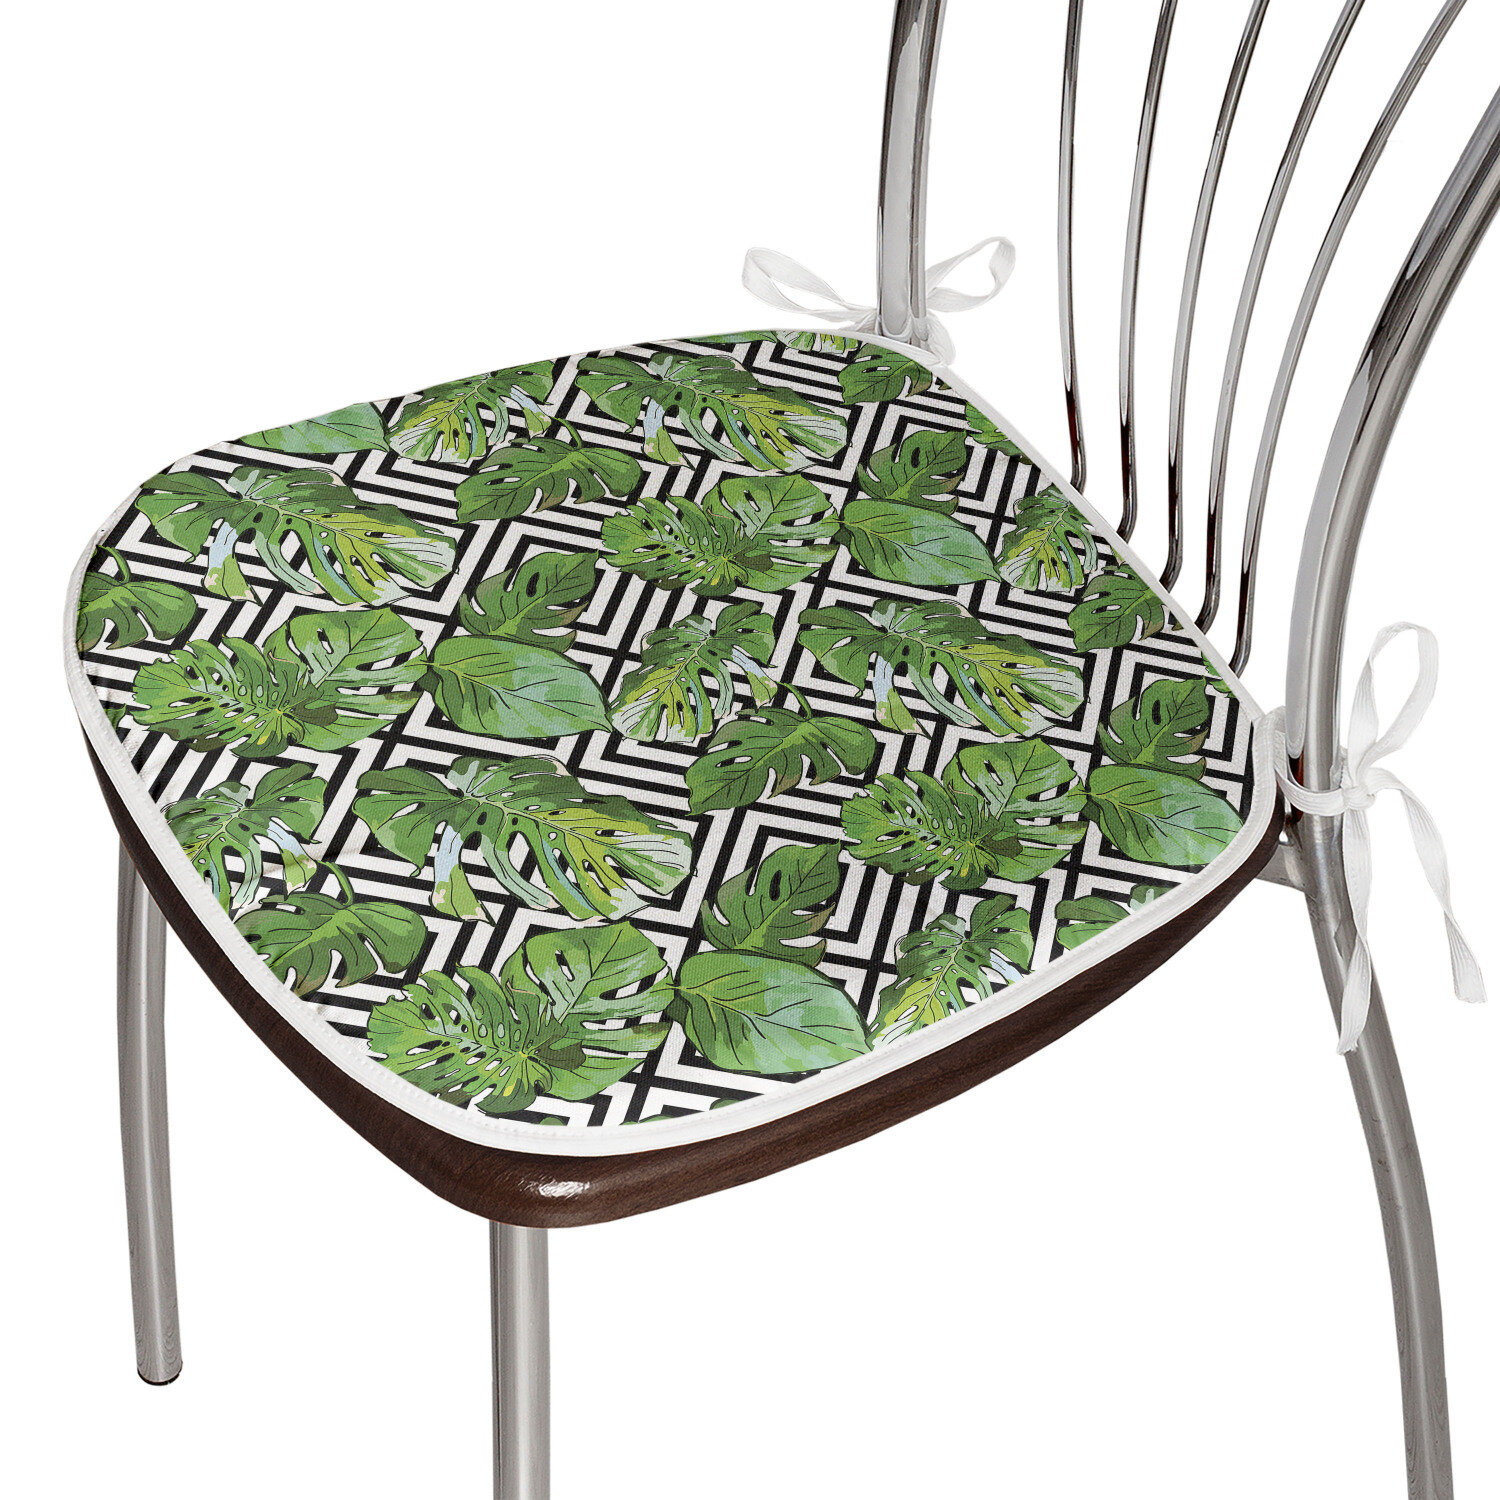 https://assets.wfcdn.com/im/32686767/compr-r85/1708/170861604/elieser-outdoor-059-dining-chair-chair-pad.jpg